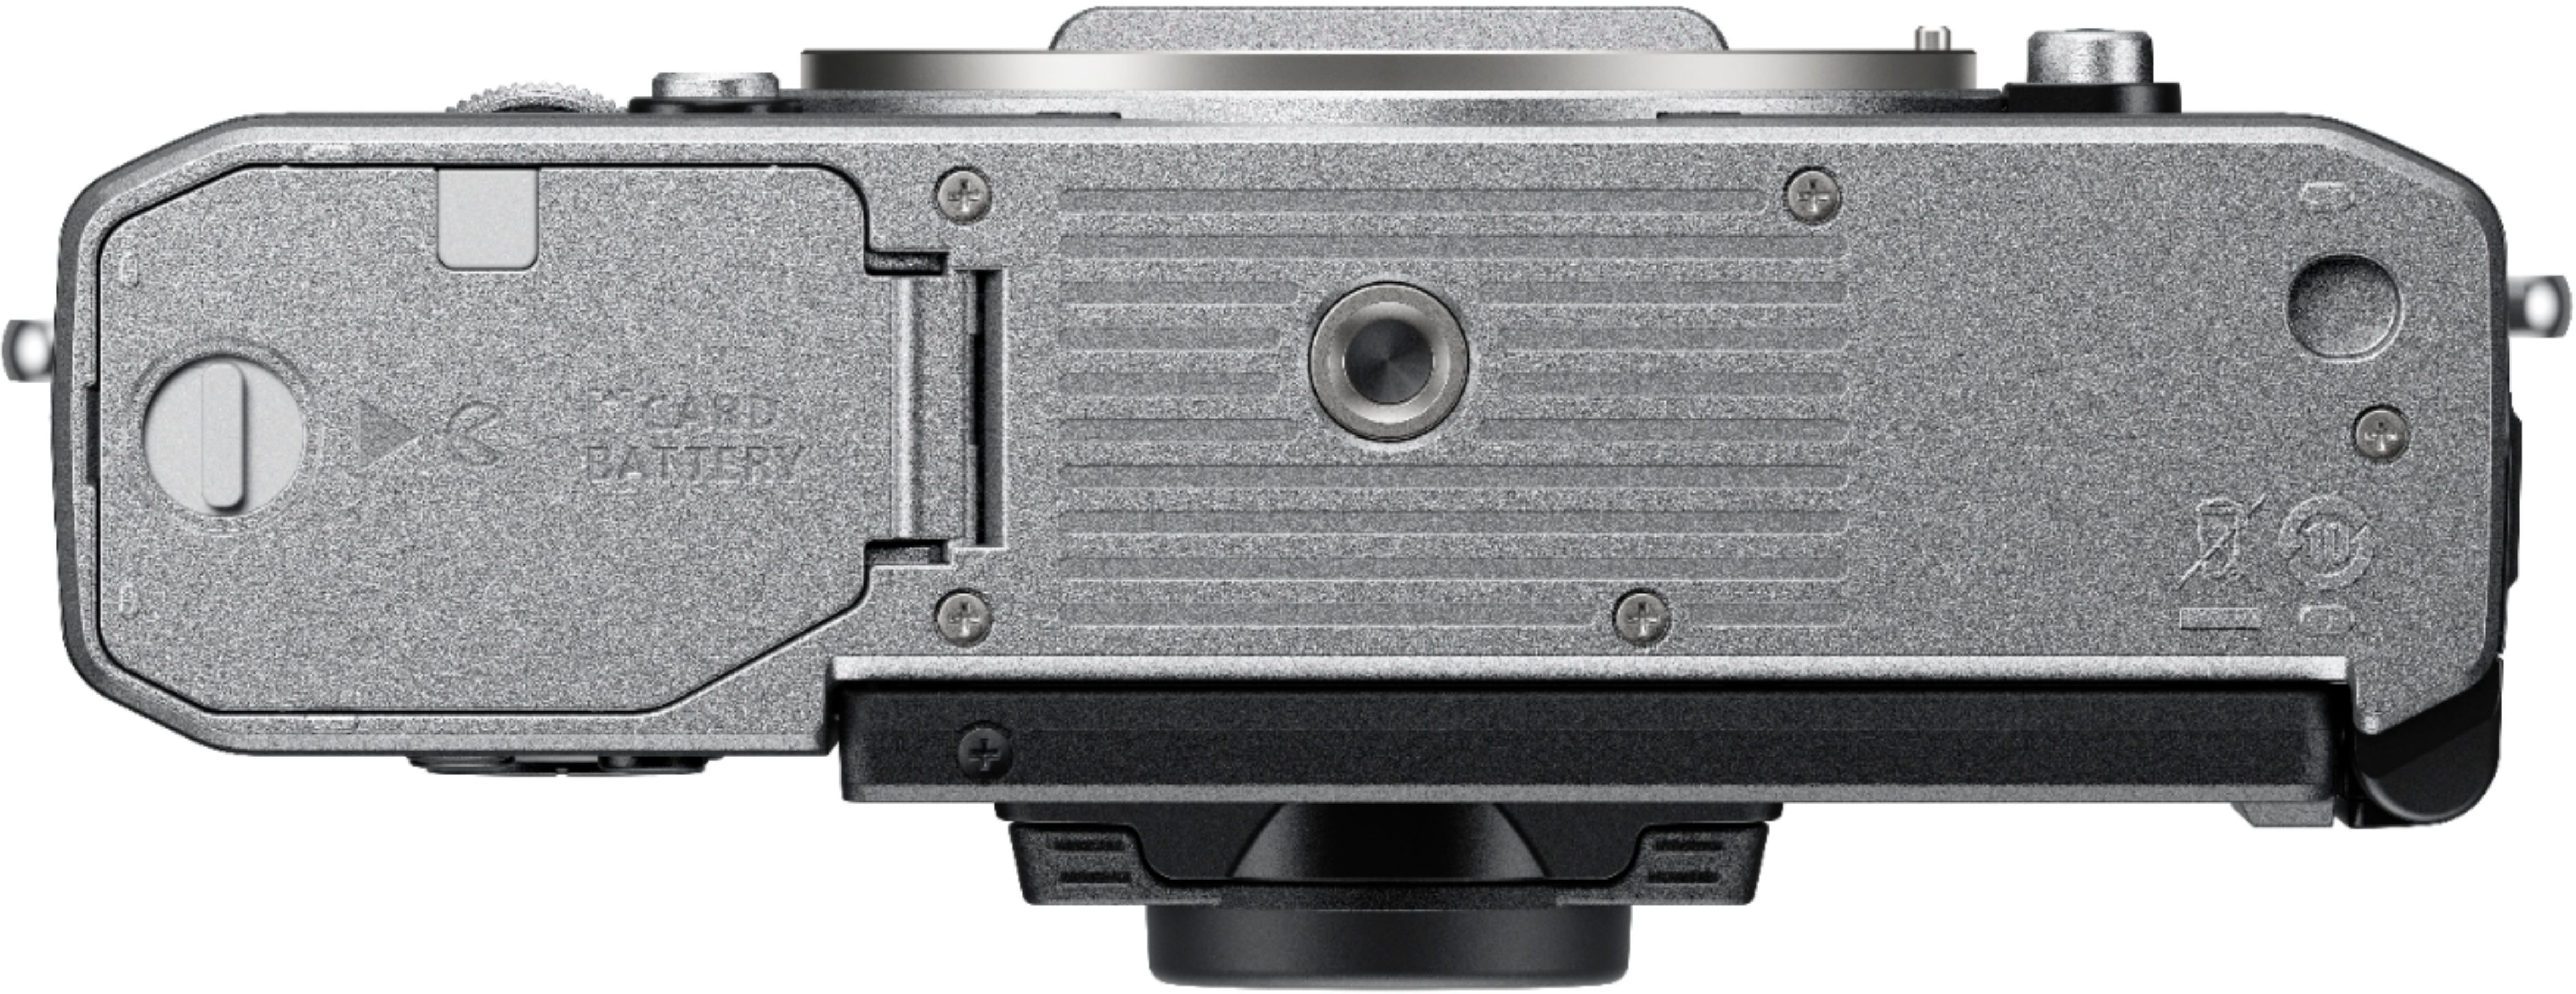 Left View: Nikon EN-EL18d Rechargeable Lithium-Ion Battery (10.8V, 3300mAh)